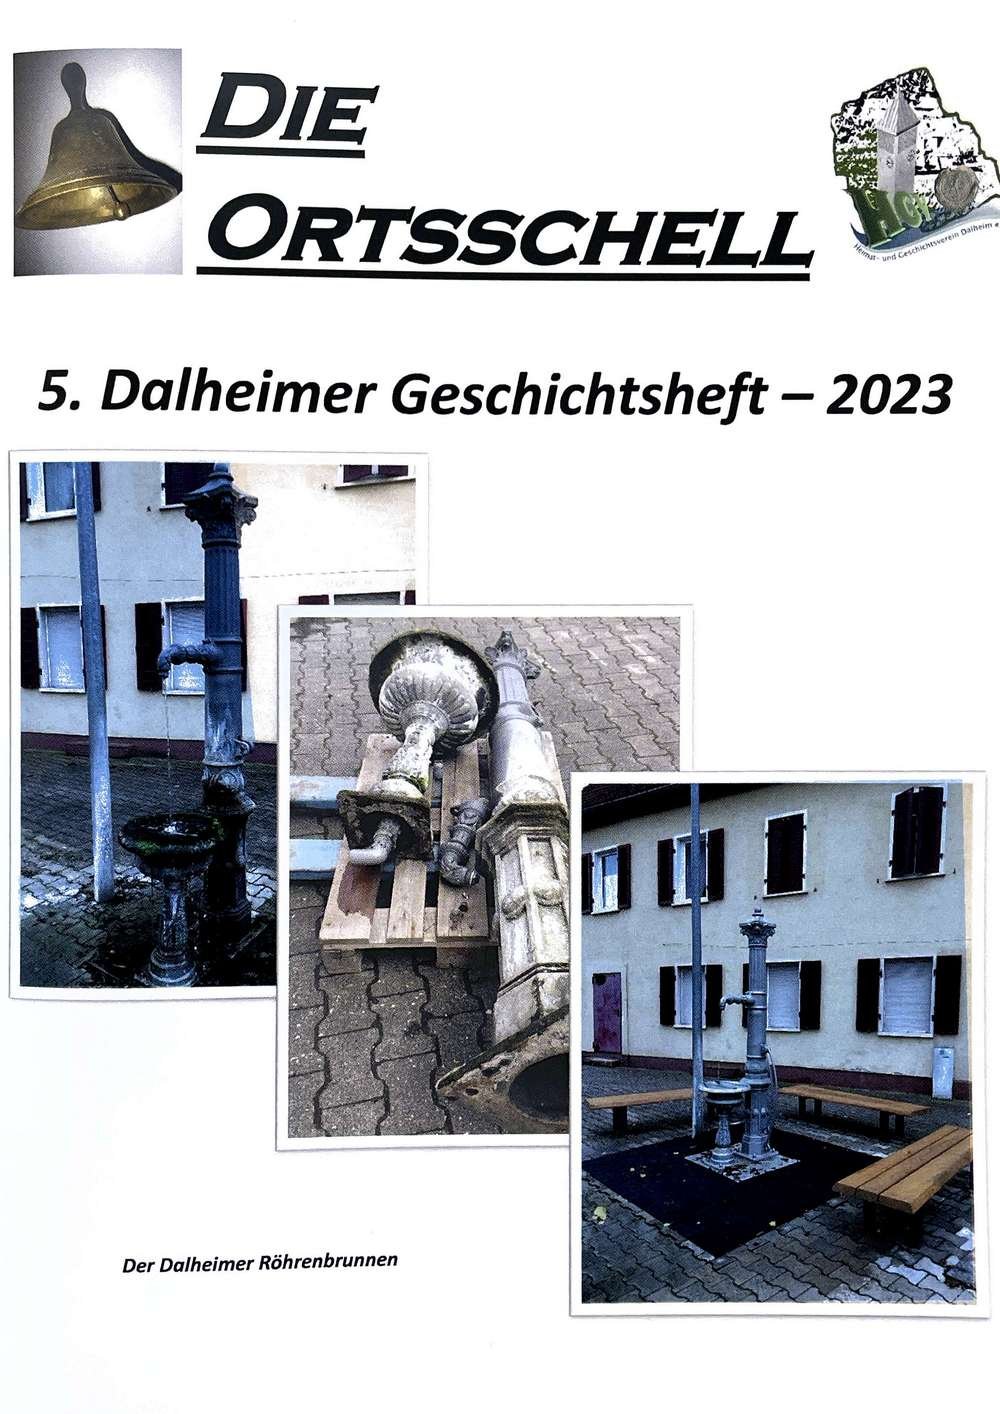 Die Ortsschell - 5. Dalheimer Geschichtsheft 2023 (Museum Guntersblum CC BY-NC-SA)